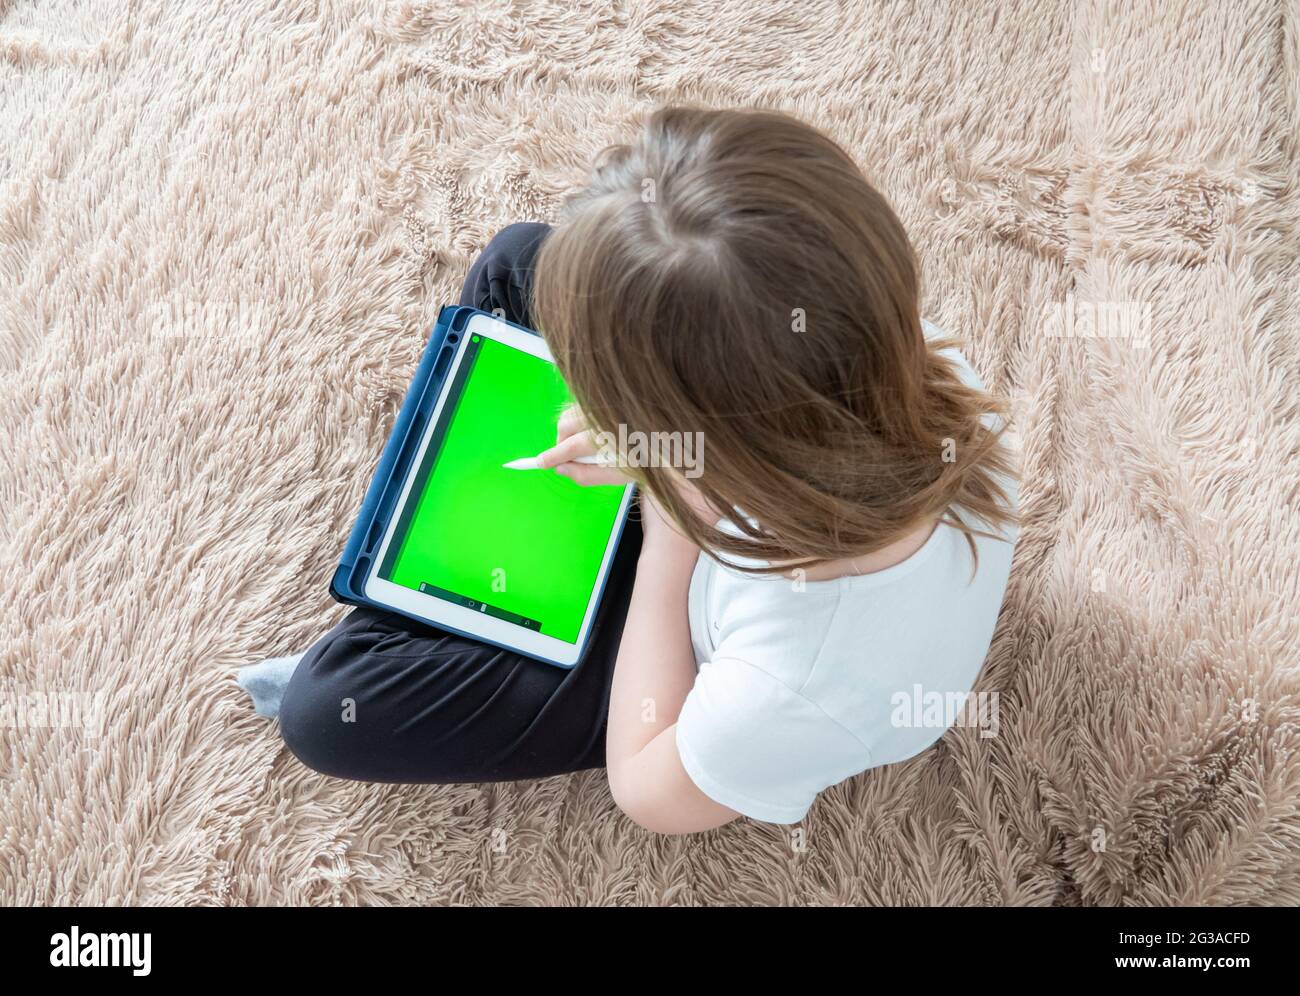 Une jeune artiste numérique tire avec un stylet sur une tablette ou un ordinateur portable. Elle est étudiante et étudie le dessin. Banque D'Images